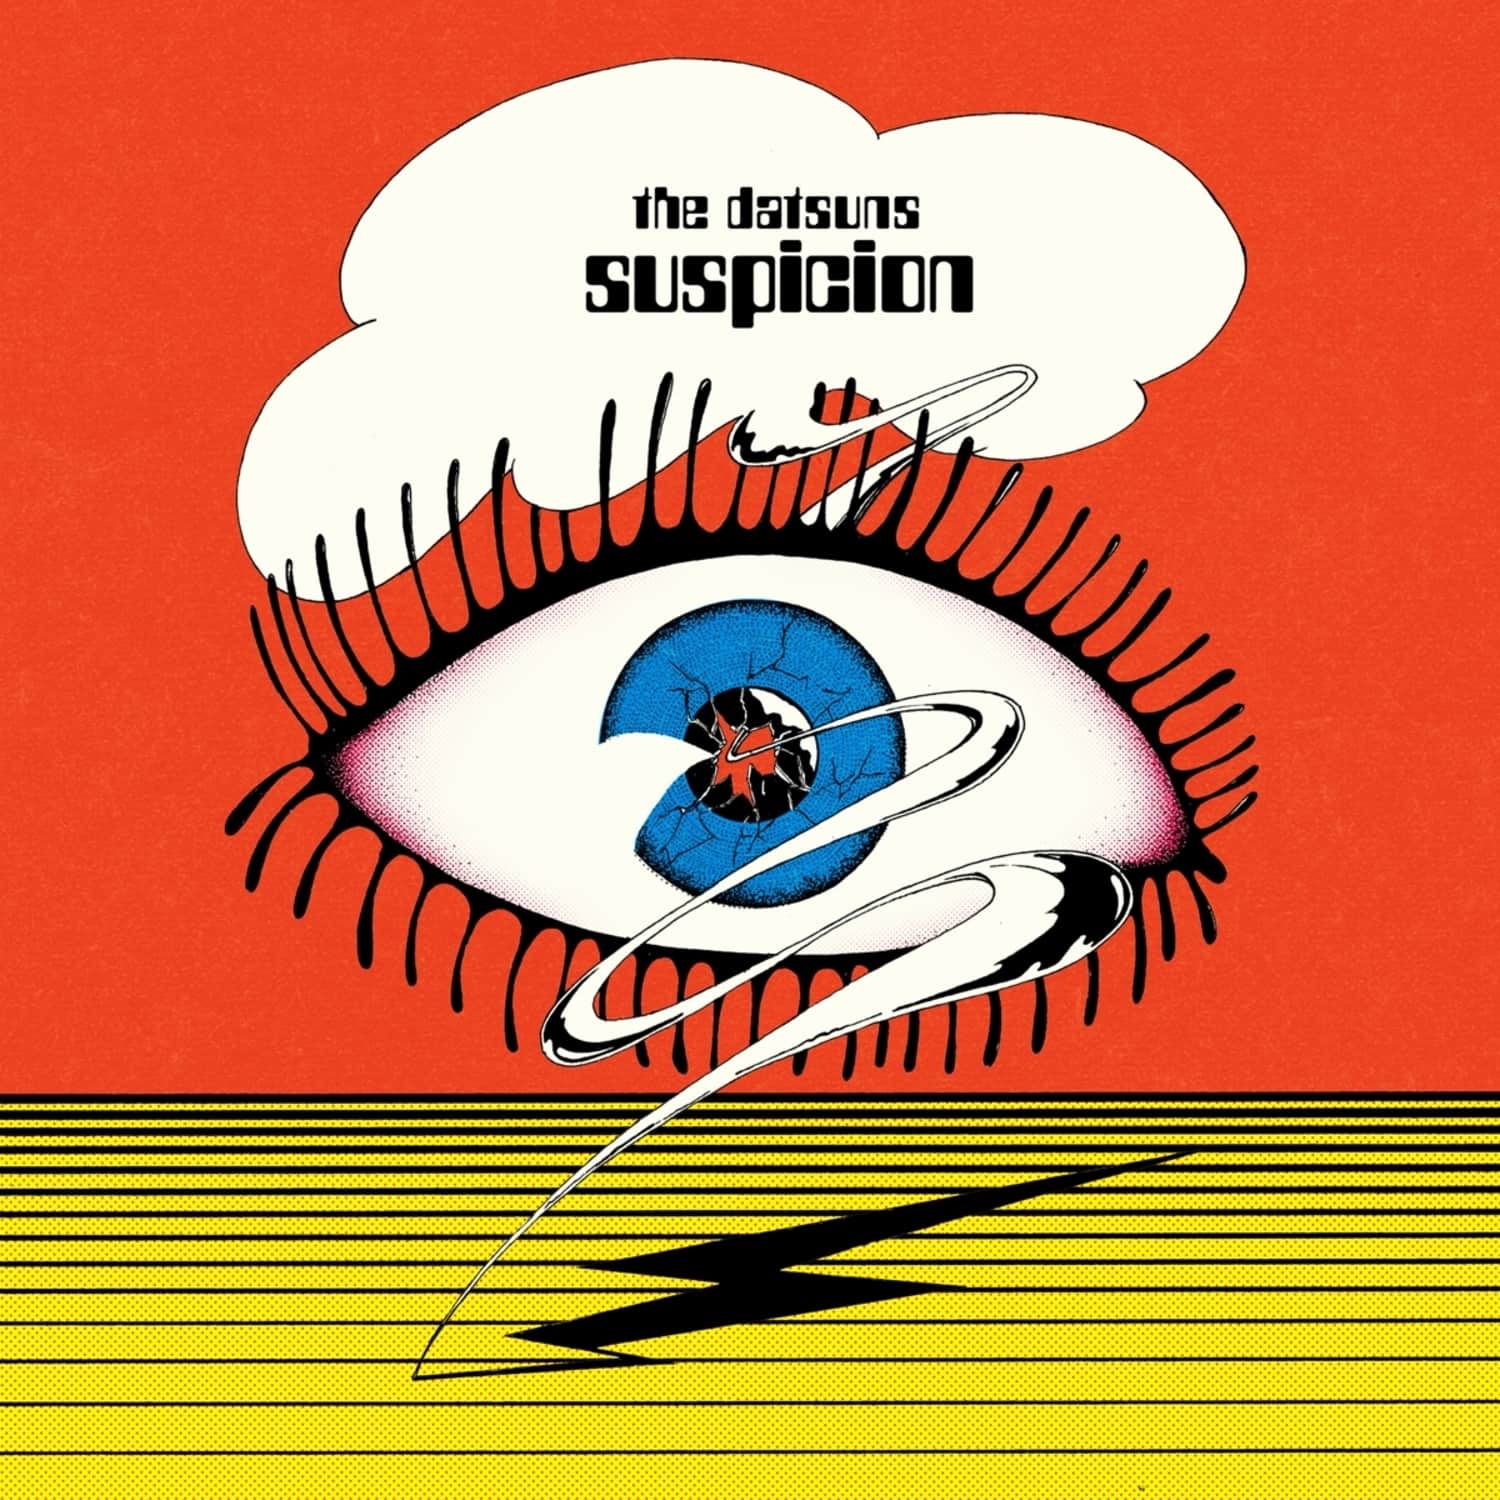  The Datsuns - 7-SUSPICION 